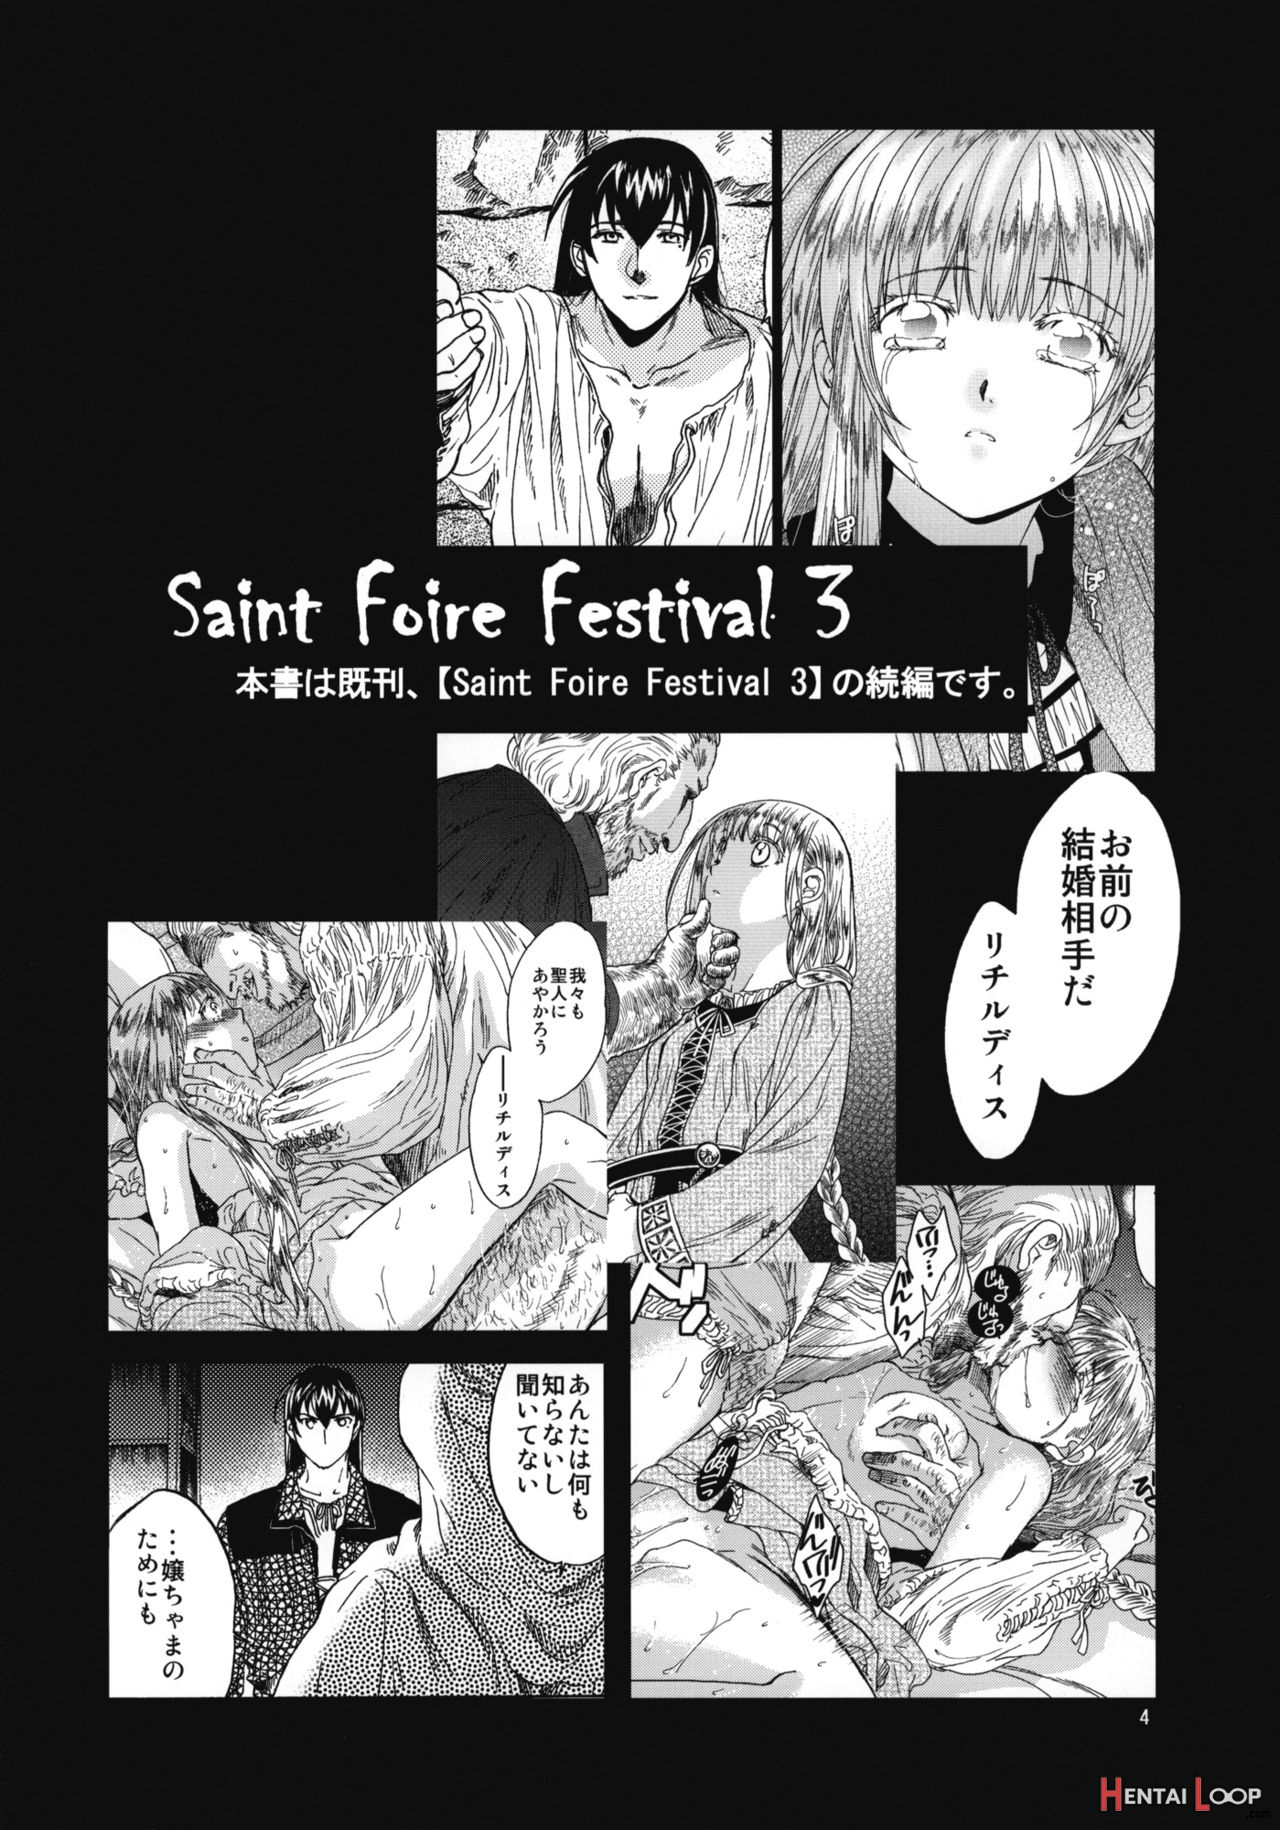 Saint Foire Festival 4 Richildis page 2